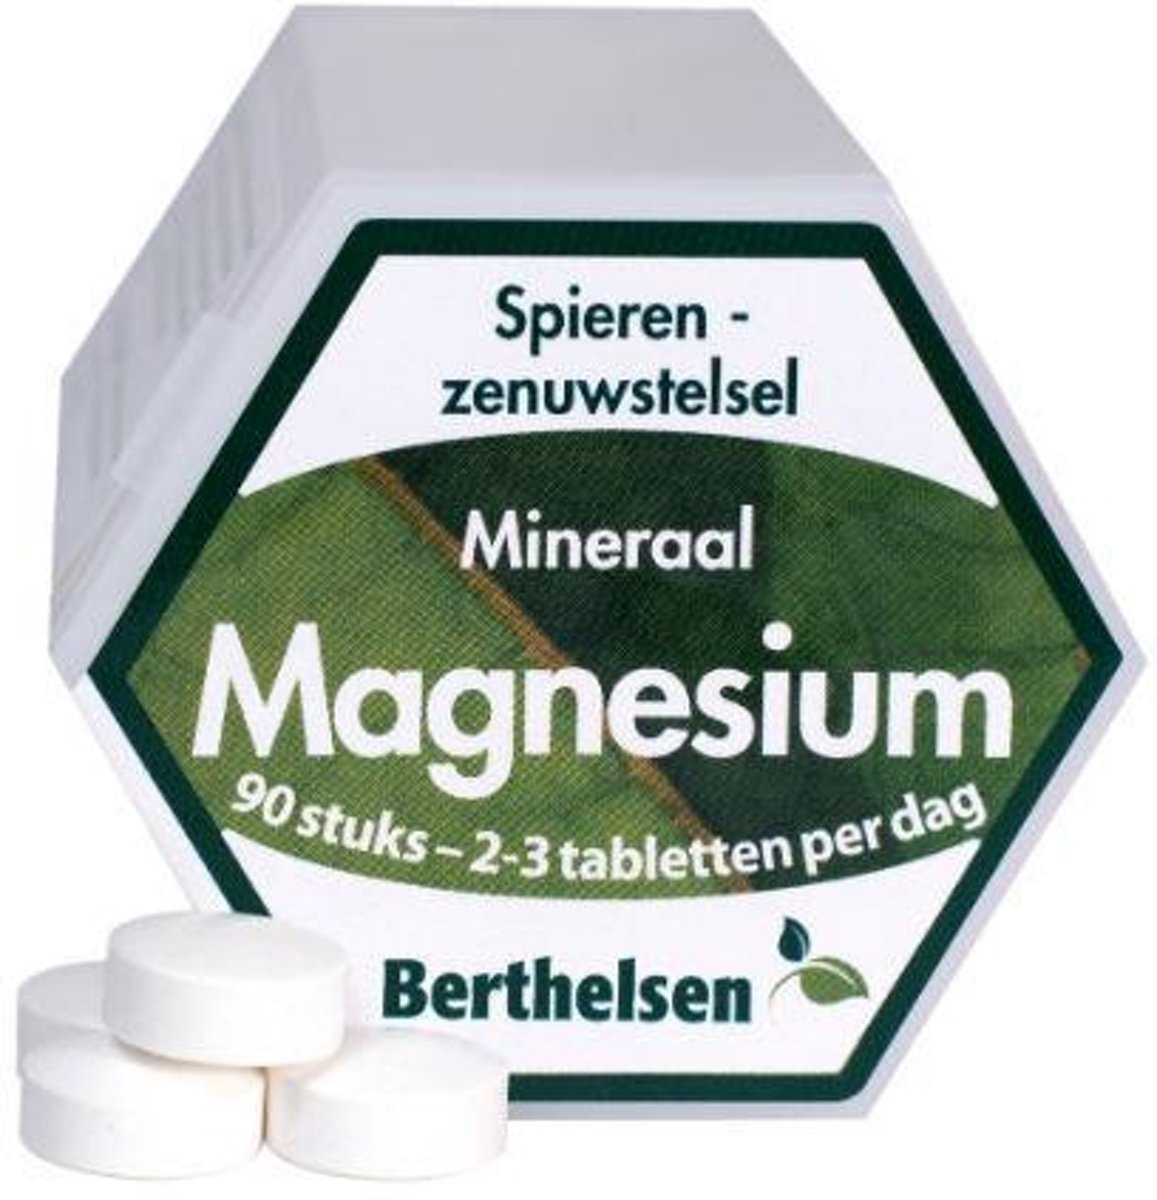 Foto van Berthelsen Magnesium Forte - 90 tabletten